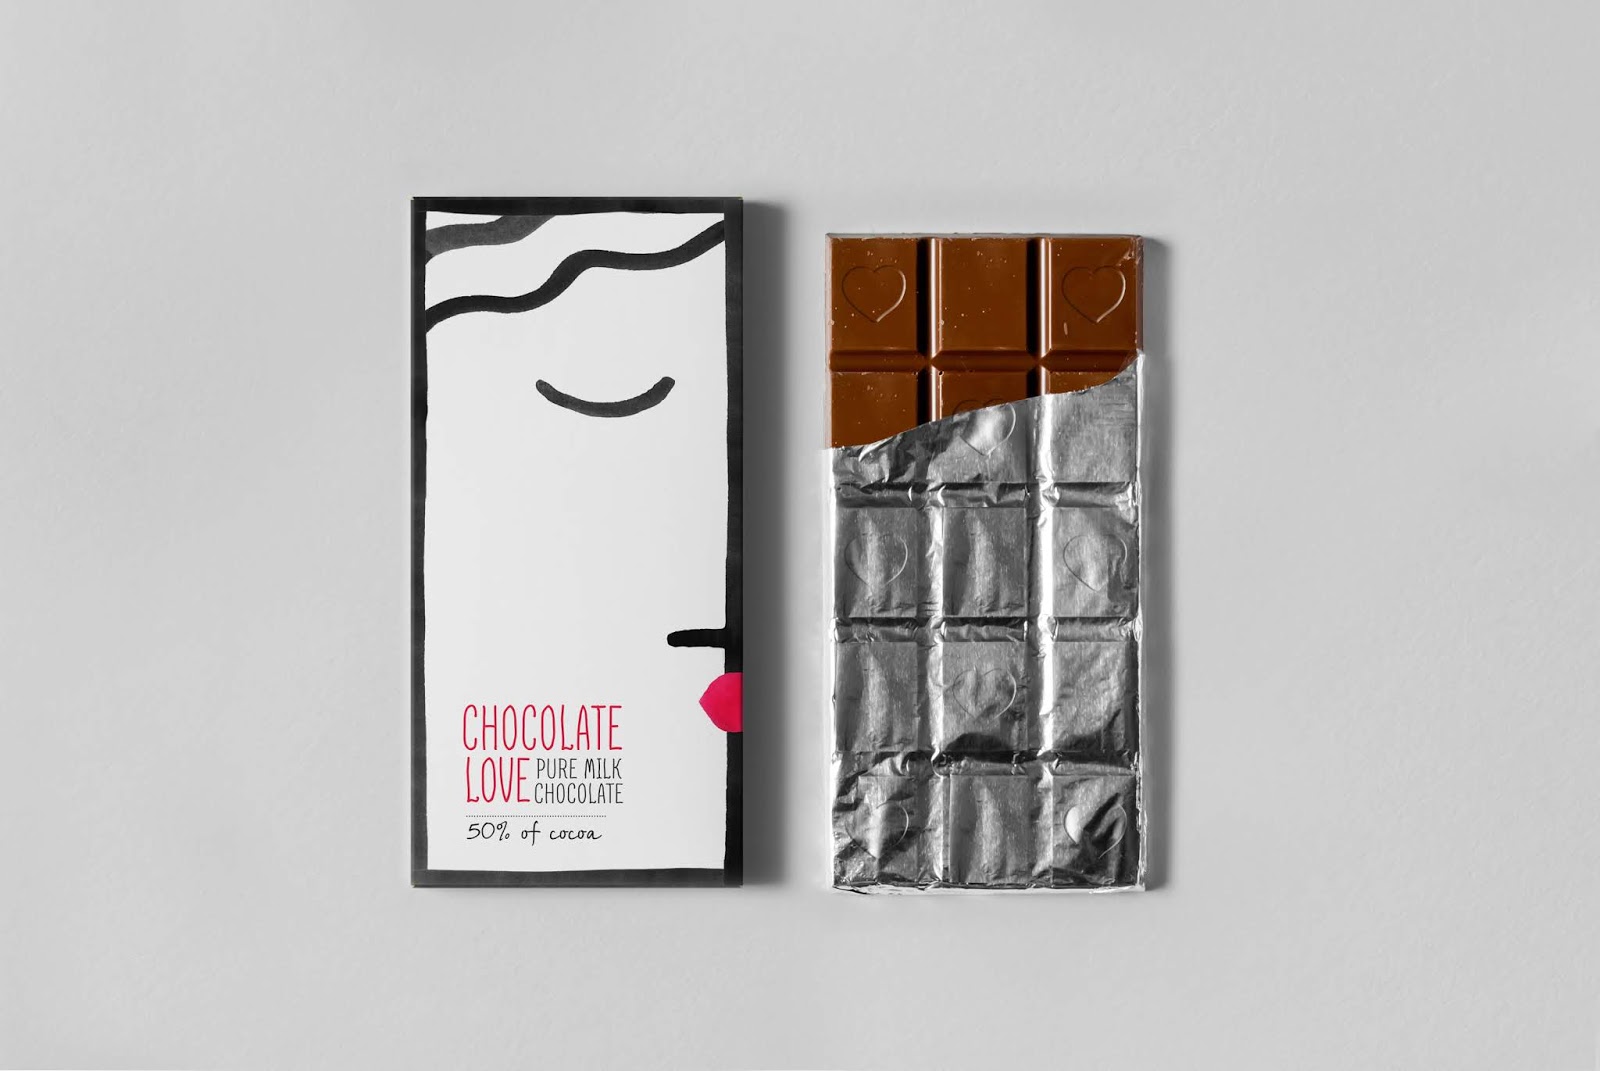 巧克力之爱西安oe欧亿体育app官方下载
品牌包装设计